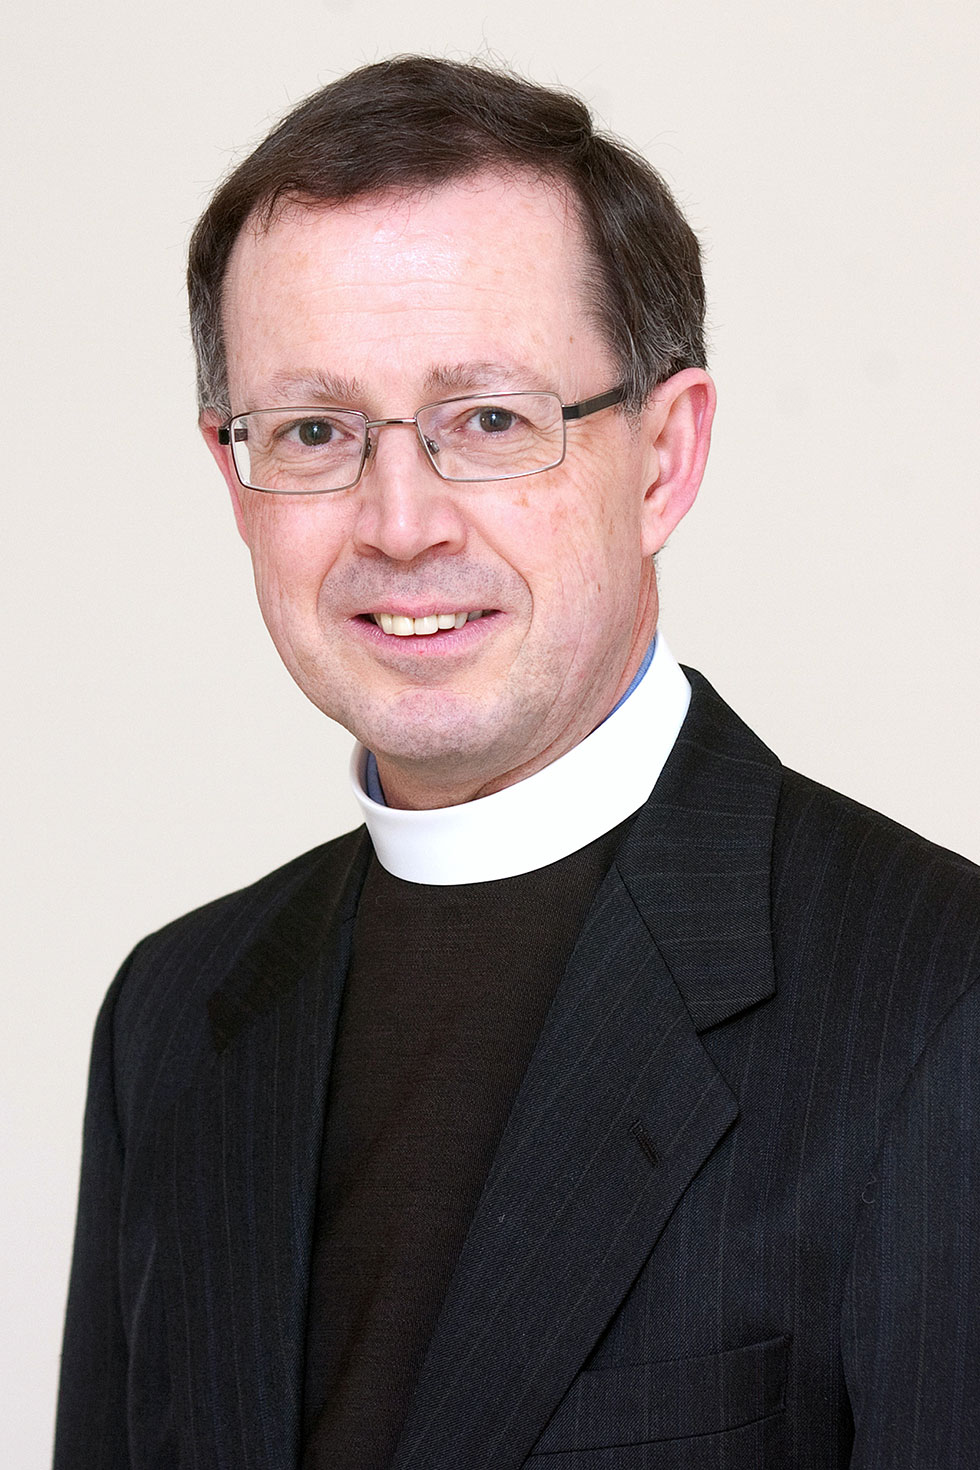 Rev Ian Johnson, the new Clyde Presbytery Moderator